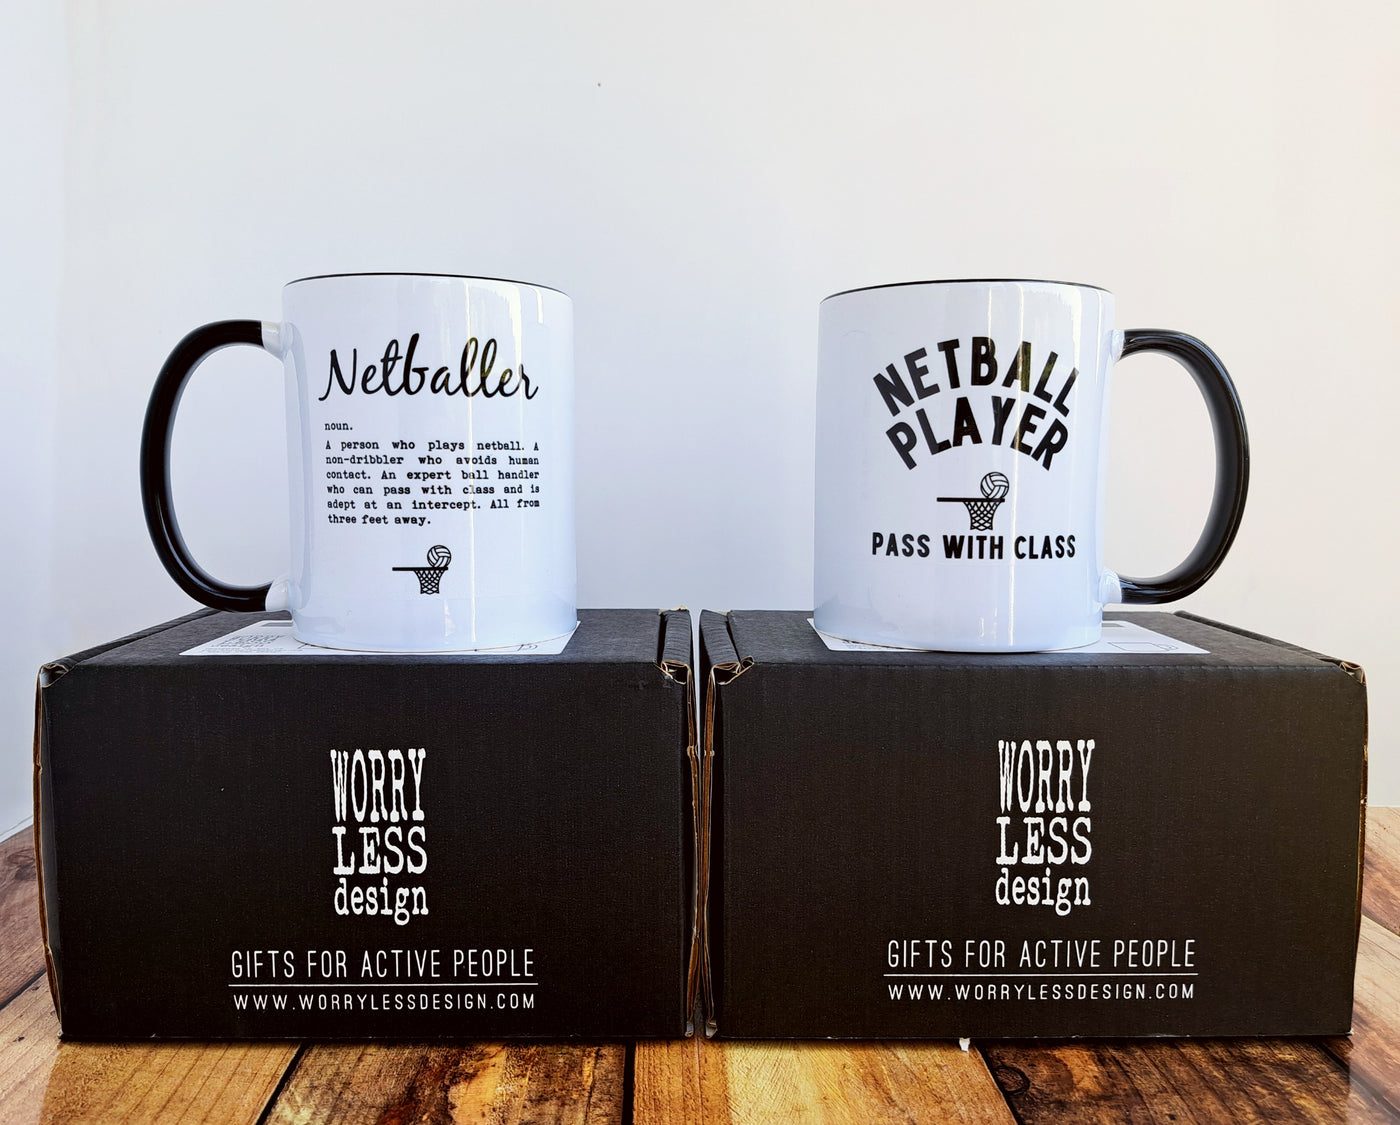 Netballer - Mug